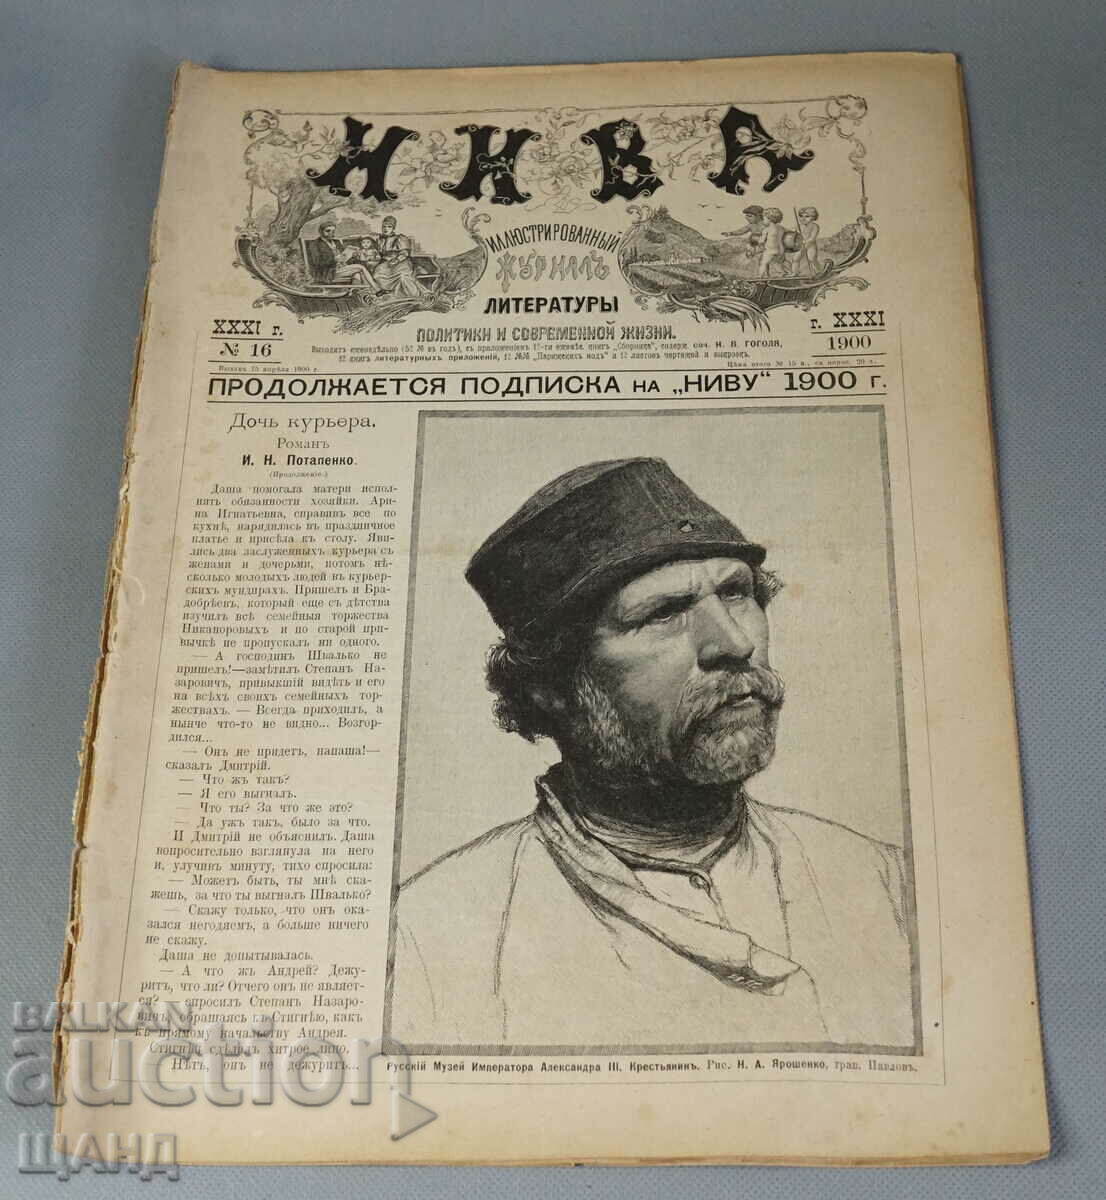 1900 Ρωσικό περιοδικό Illustrated NIVA τεύχος 16